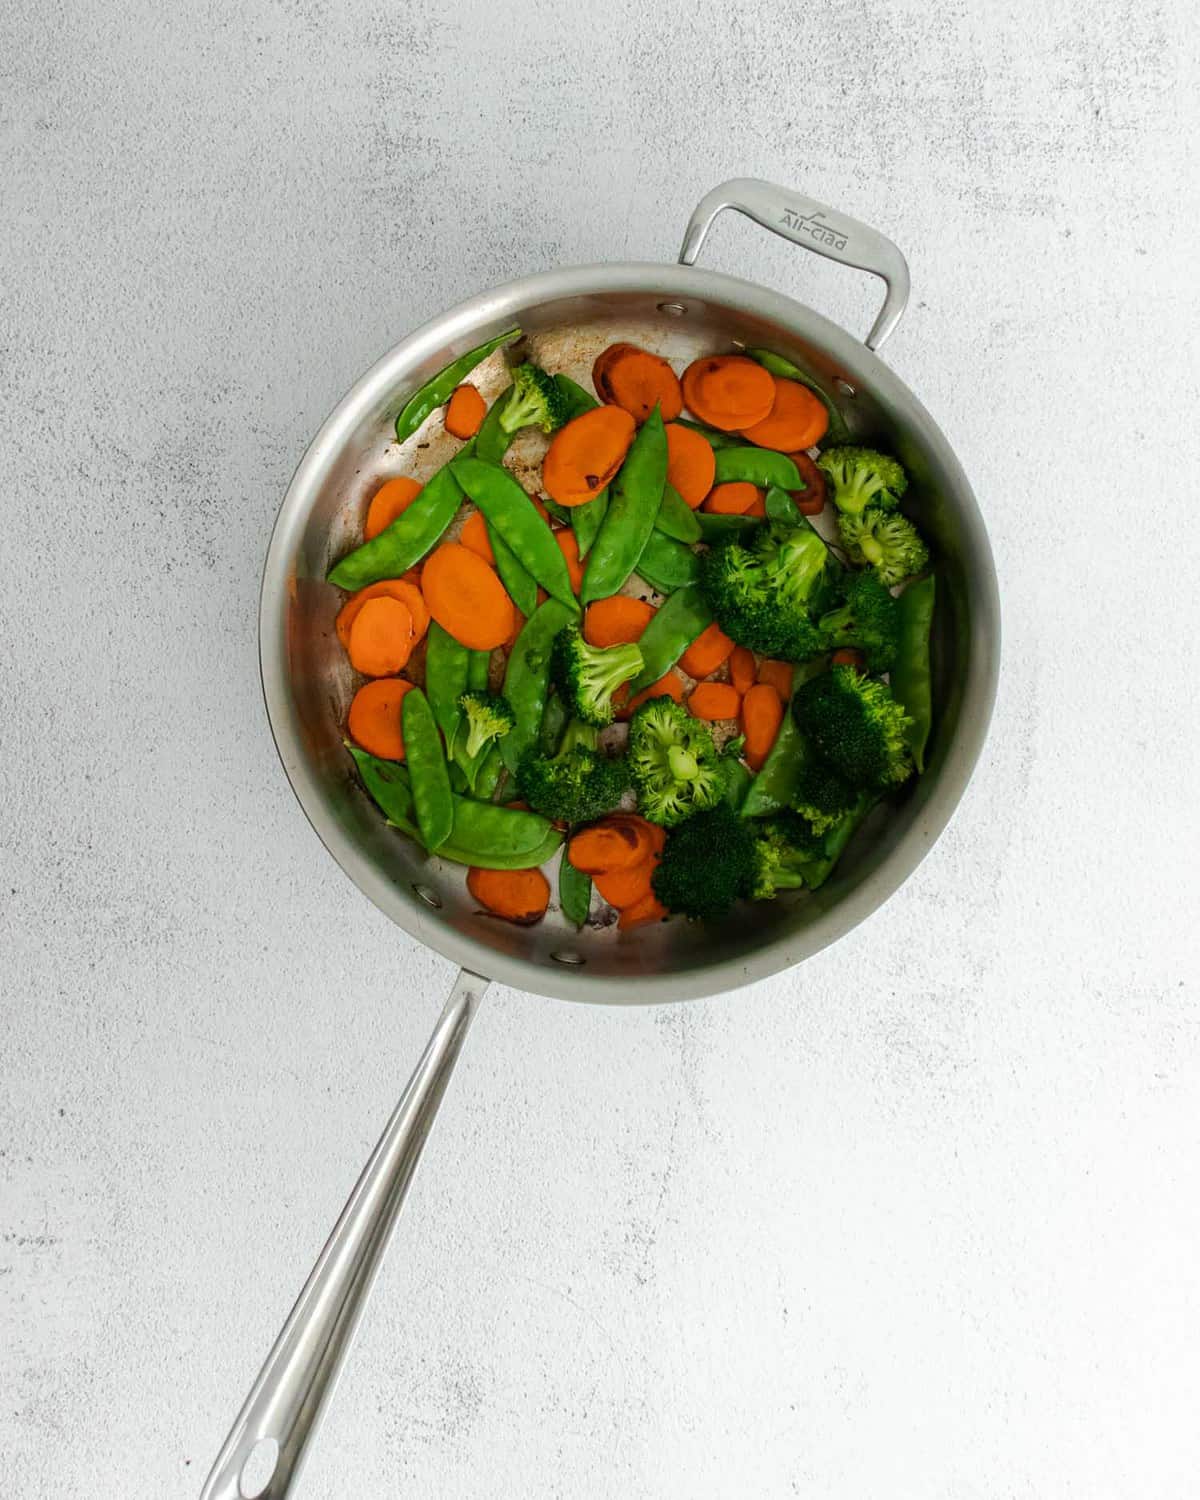 Stir fry vegetables in a pan.